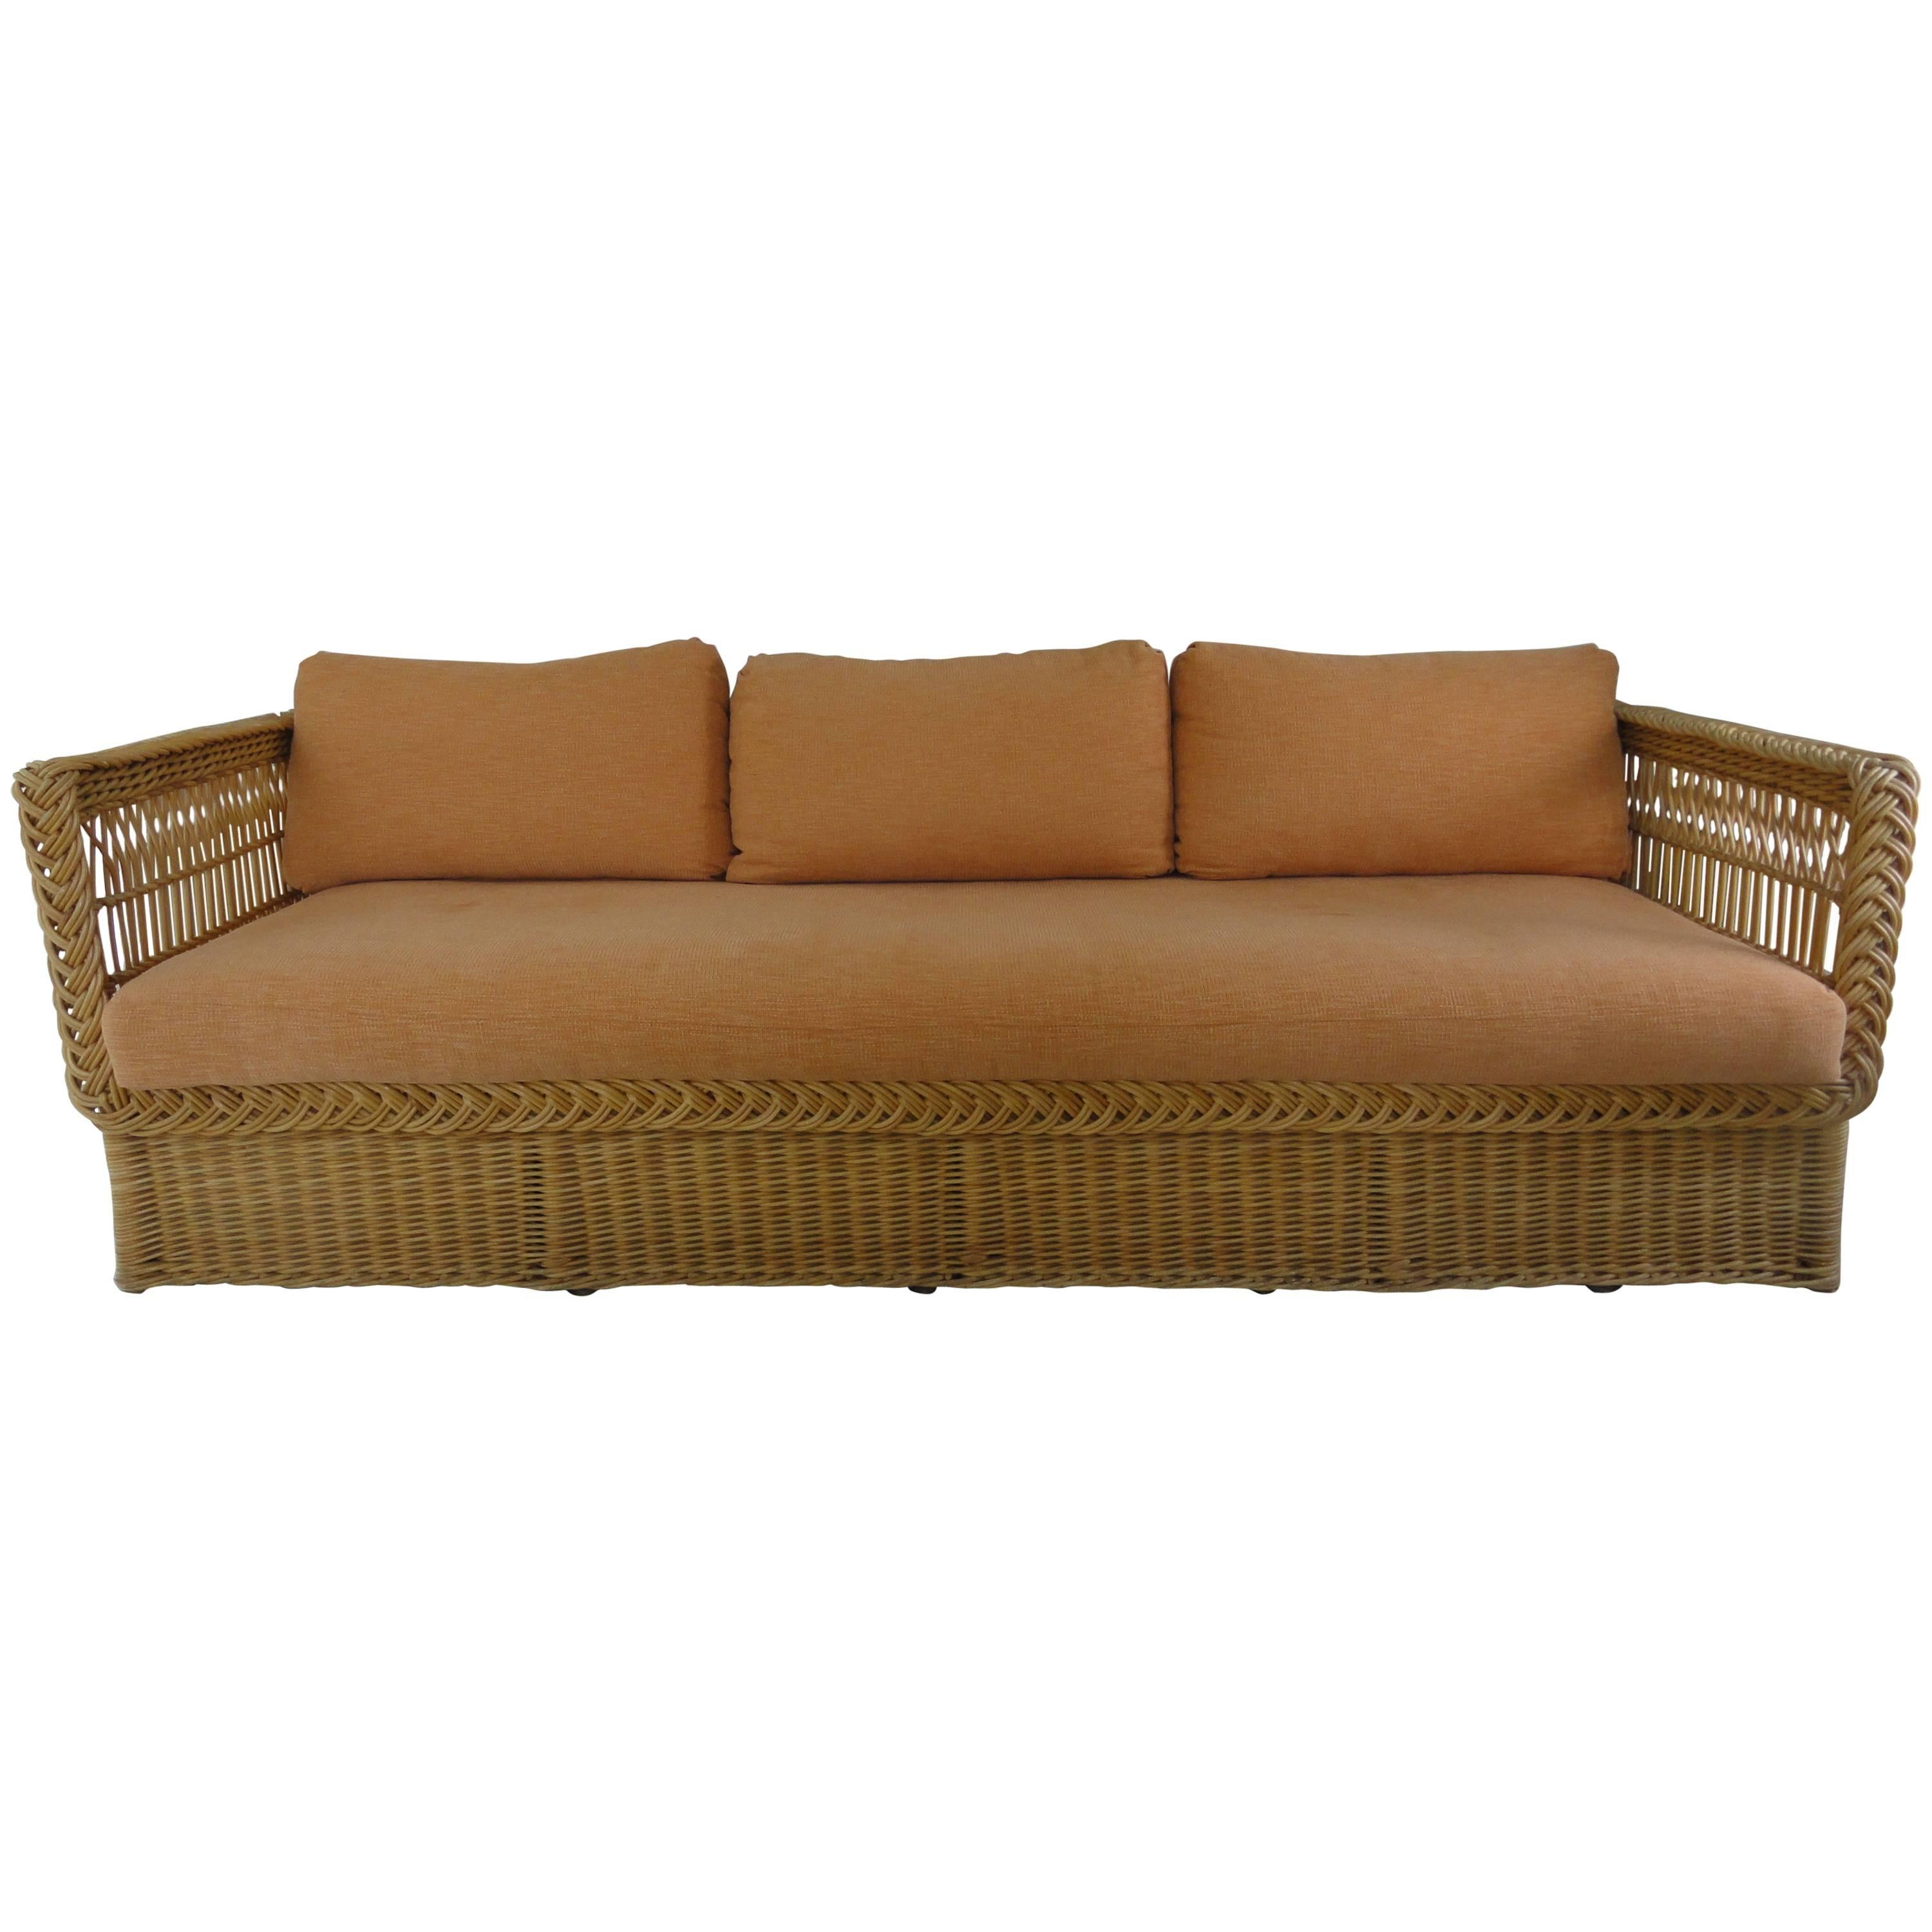 Bielecky Wicker Sofa For Sale